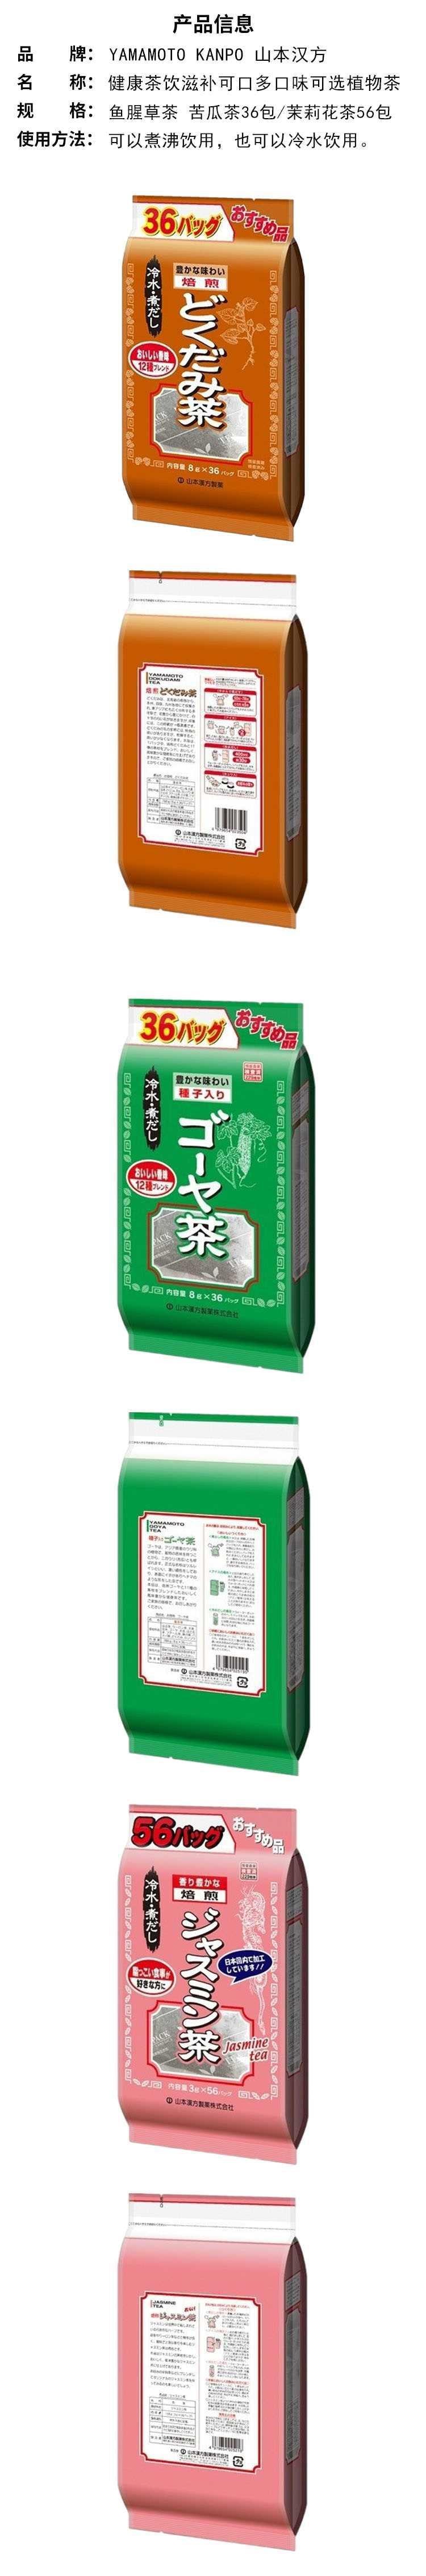 【日本直邮】YAMAMOTO山本汉方制药 超值鱼腥草茶 8g*36包